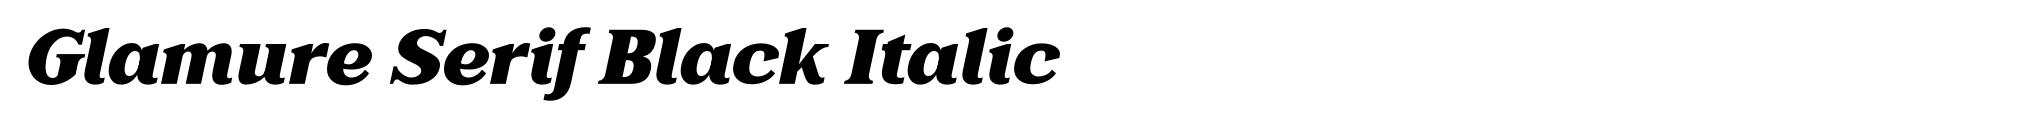 Glamure Serif Black Italic image